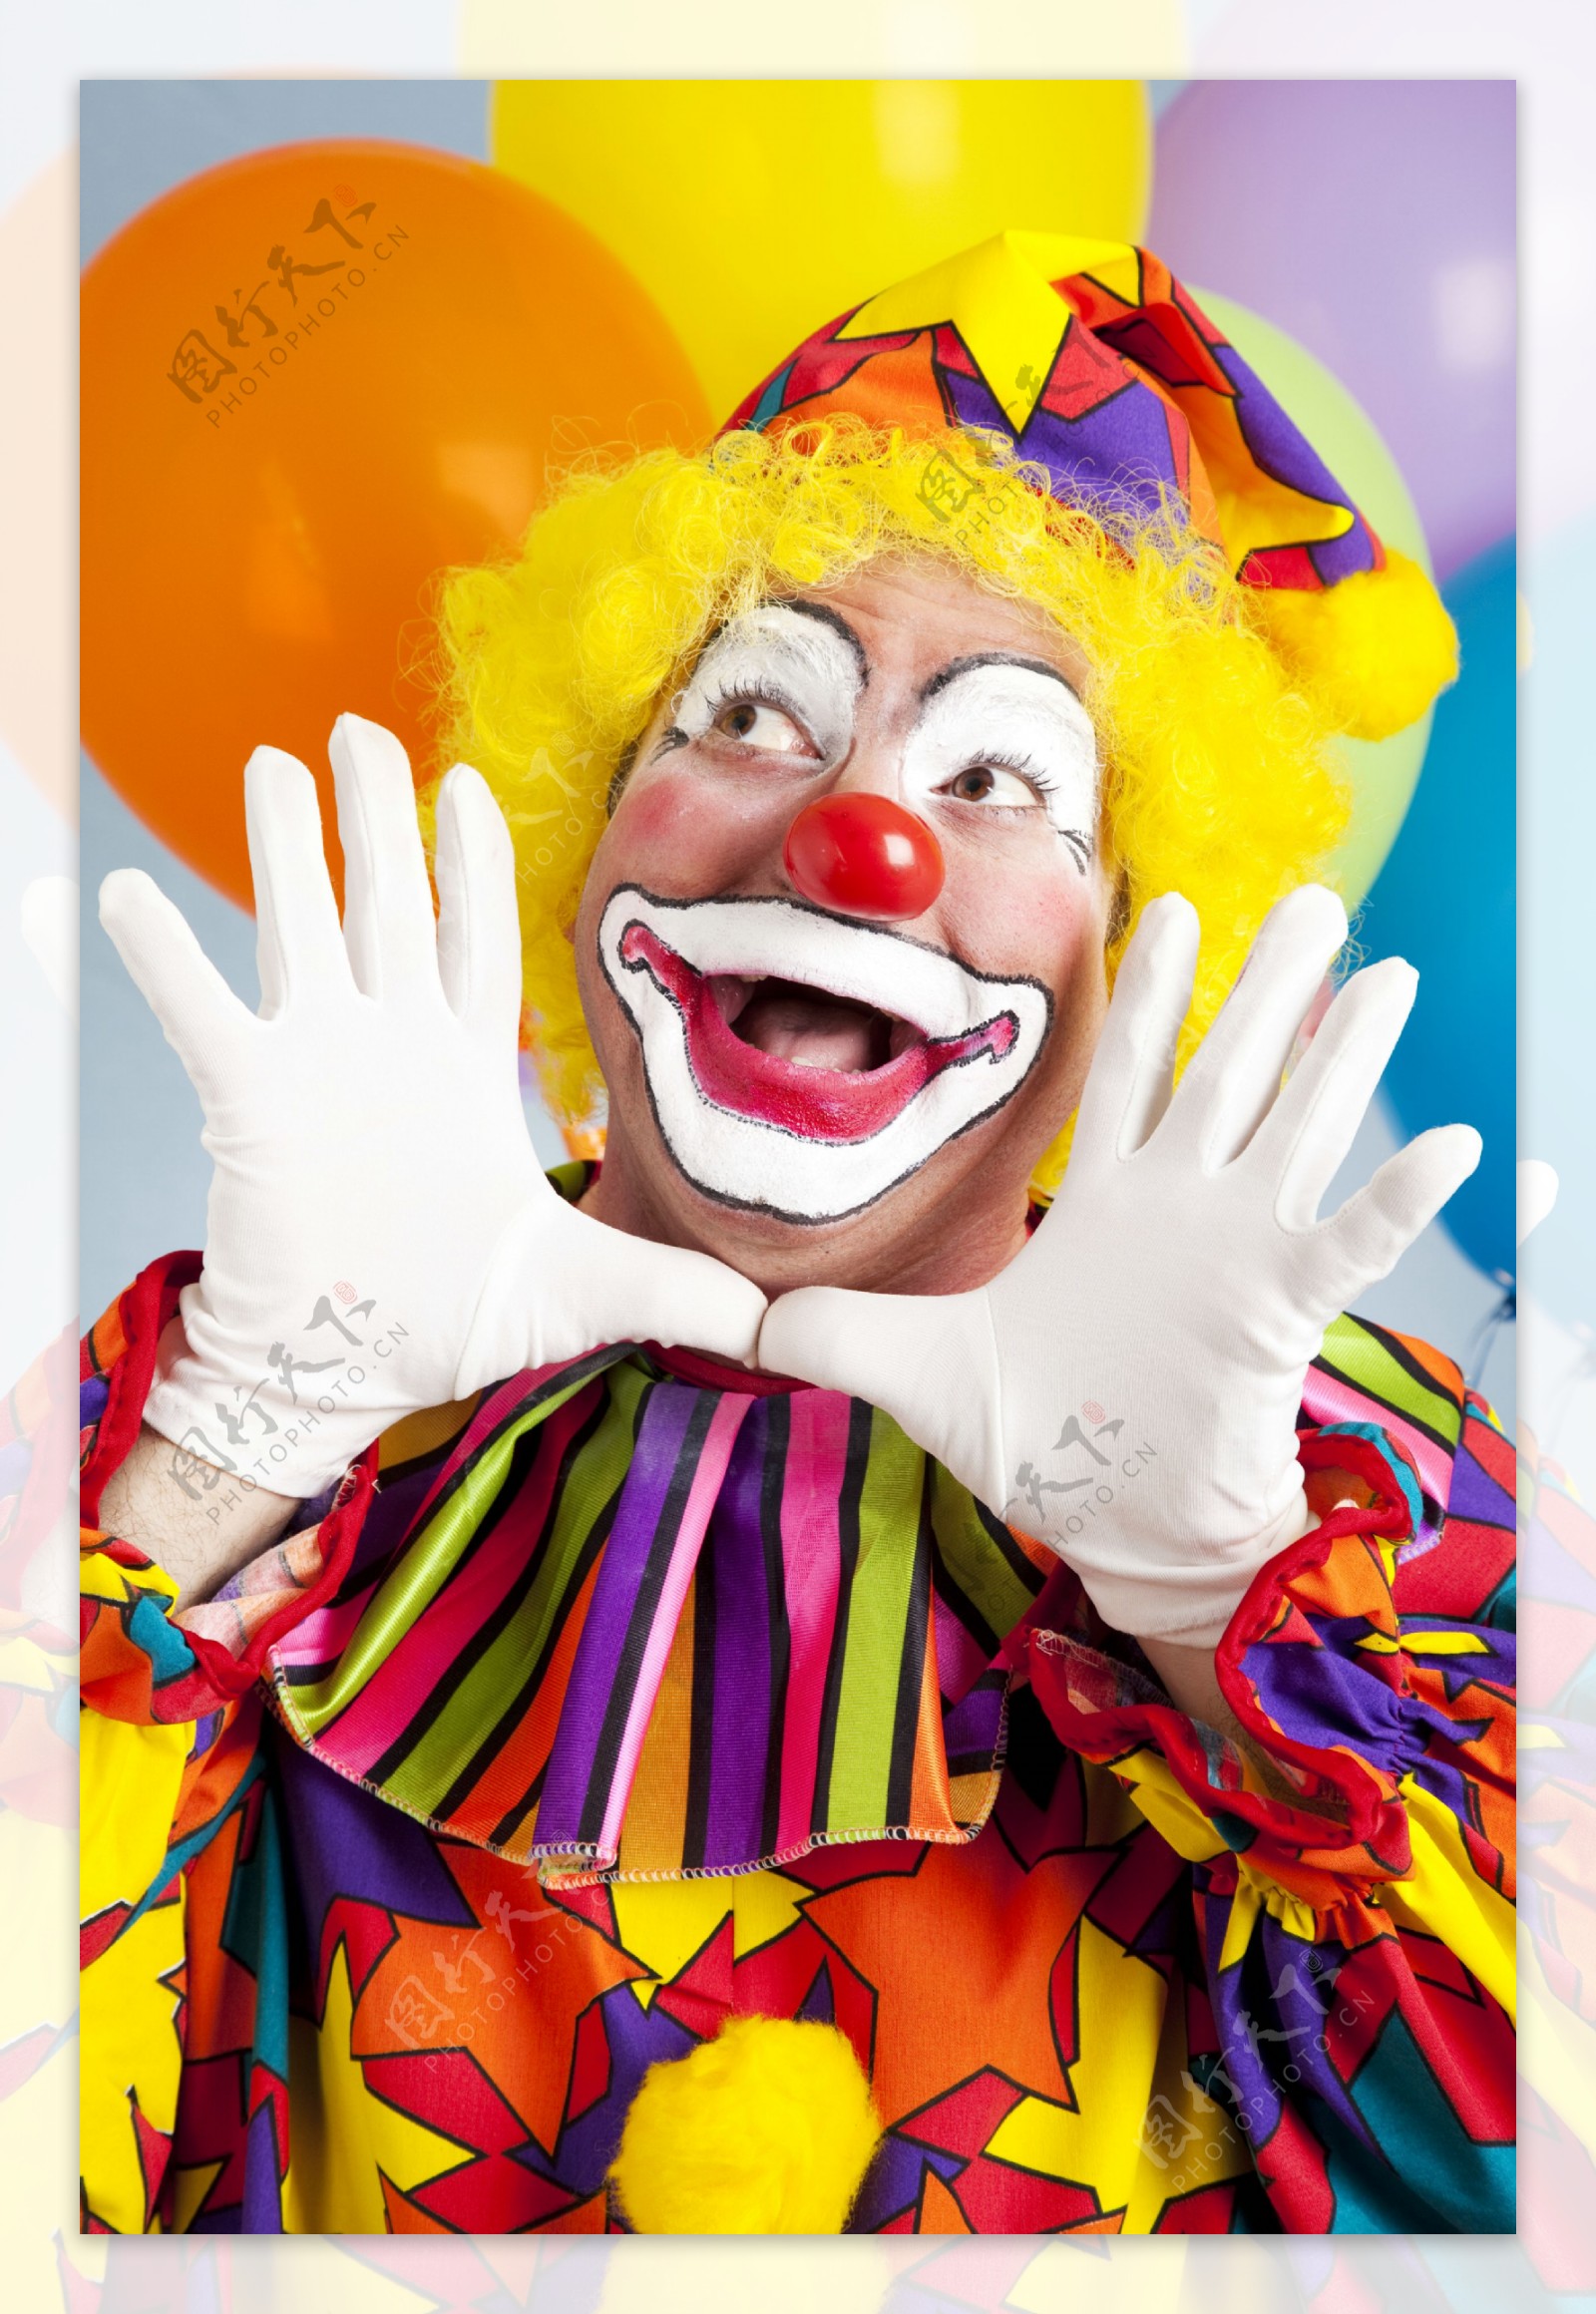 【推荐】小丑joker超高清无水印手机壁纸,壁纸党（珍藏版）_so